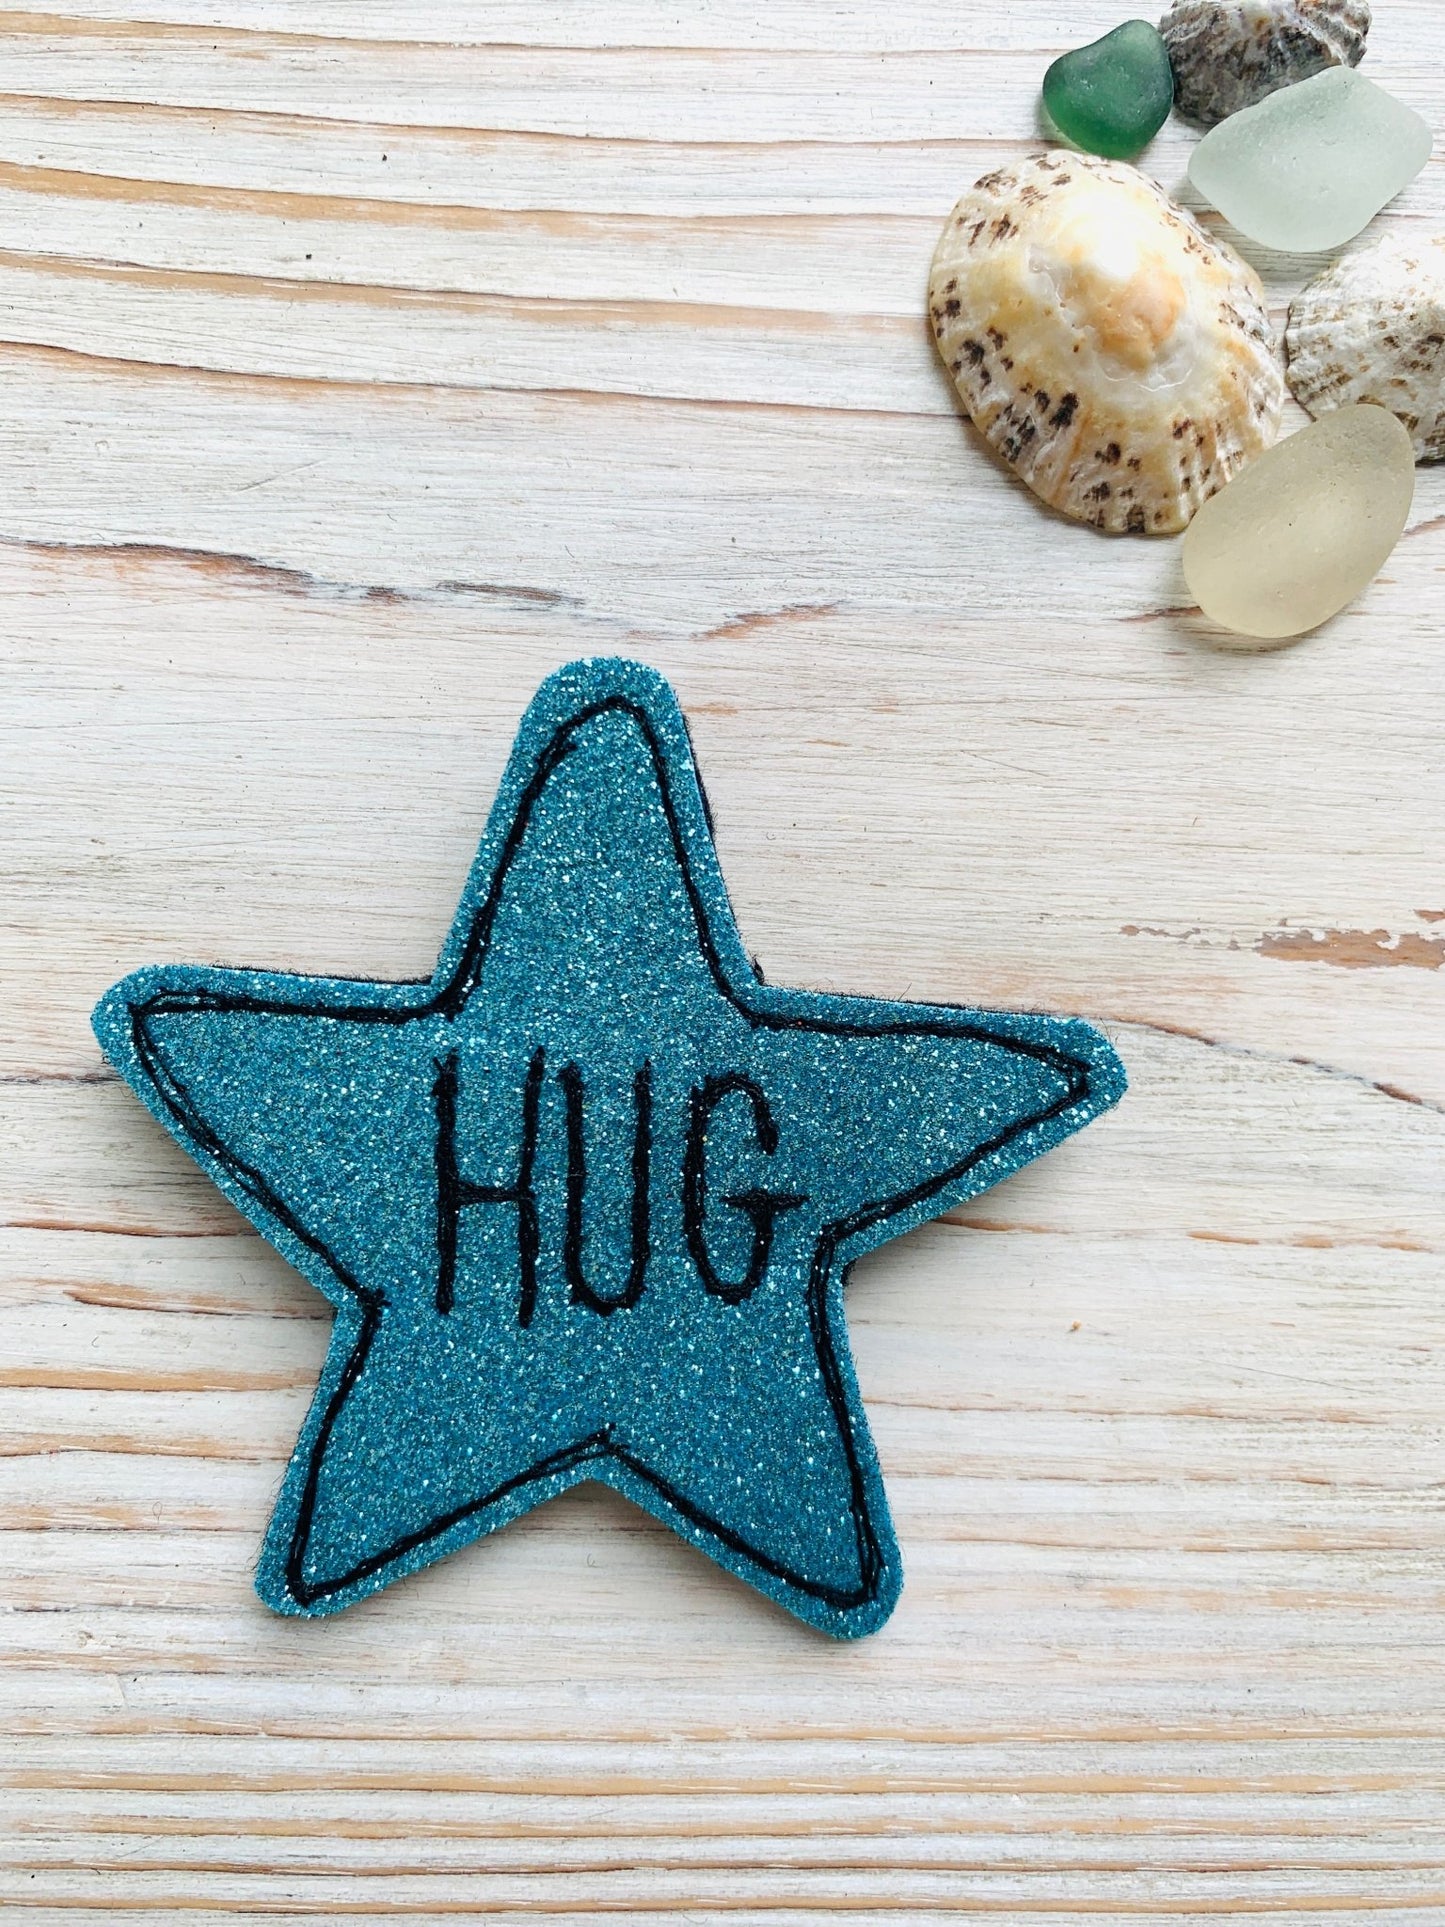 Sparkly Felt Star Hug Badge or Magnet - Readymoney Beach Shop